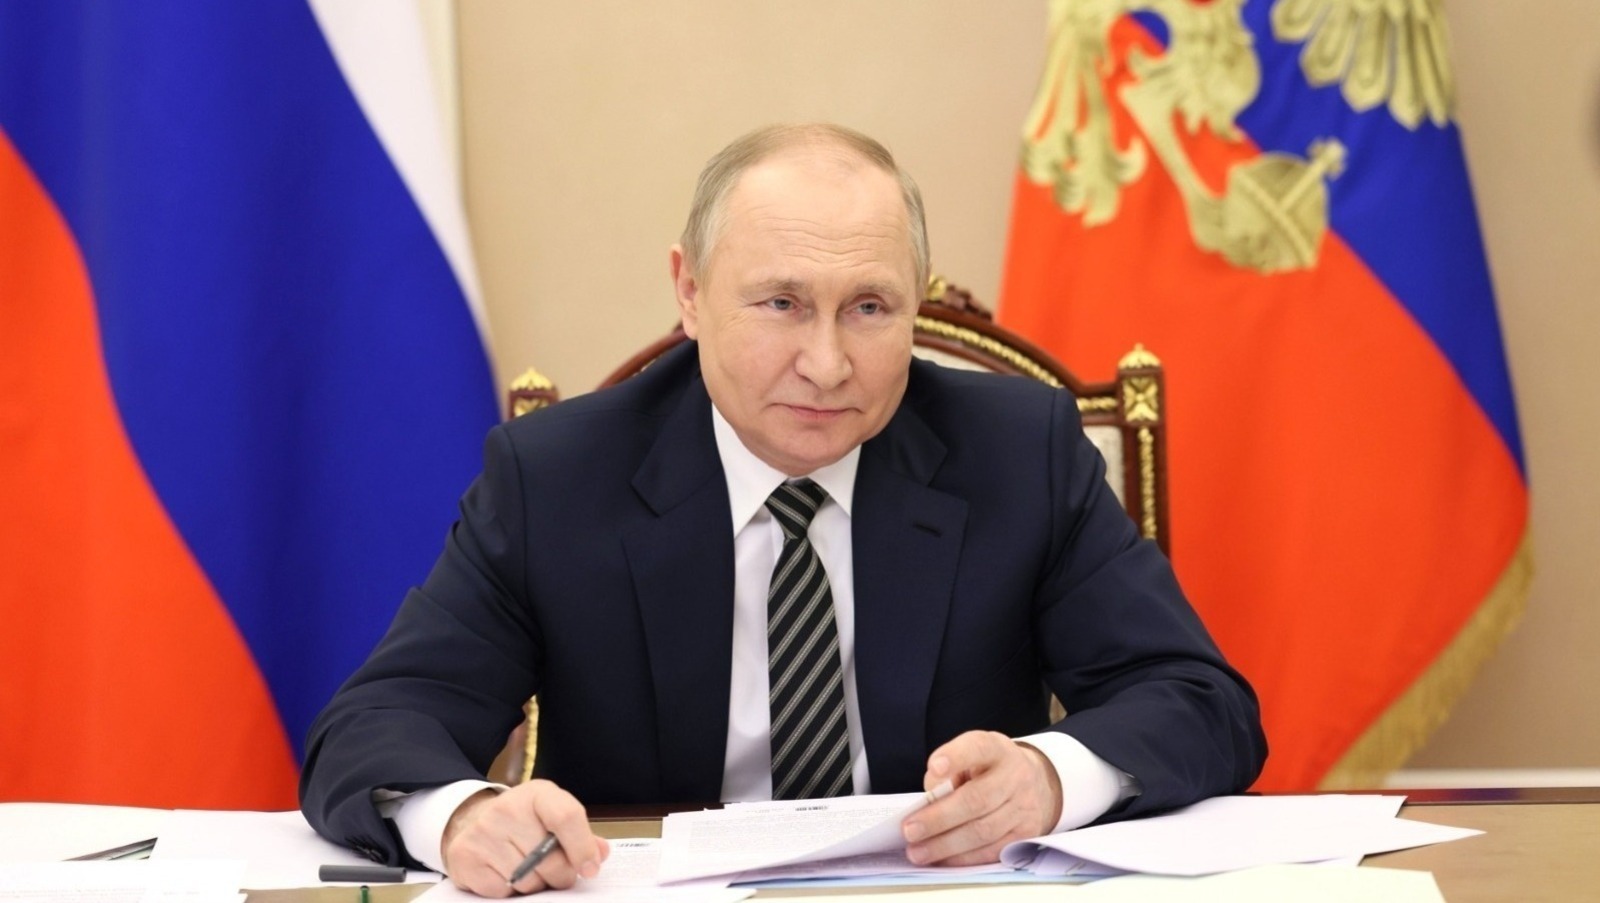 Жительнице Башкирии объявлена благодарность президента России